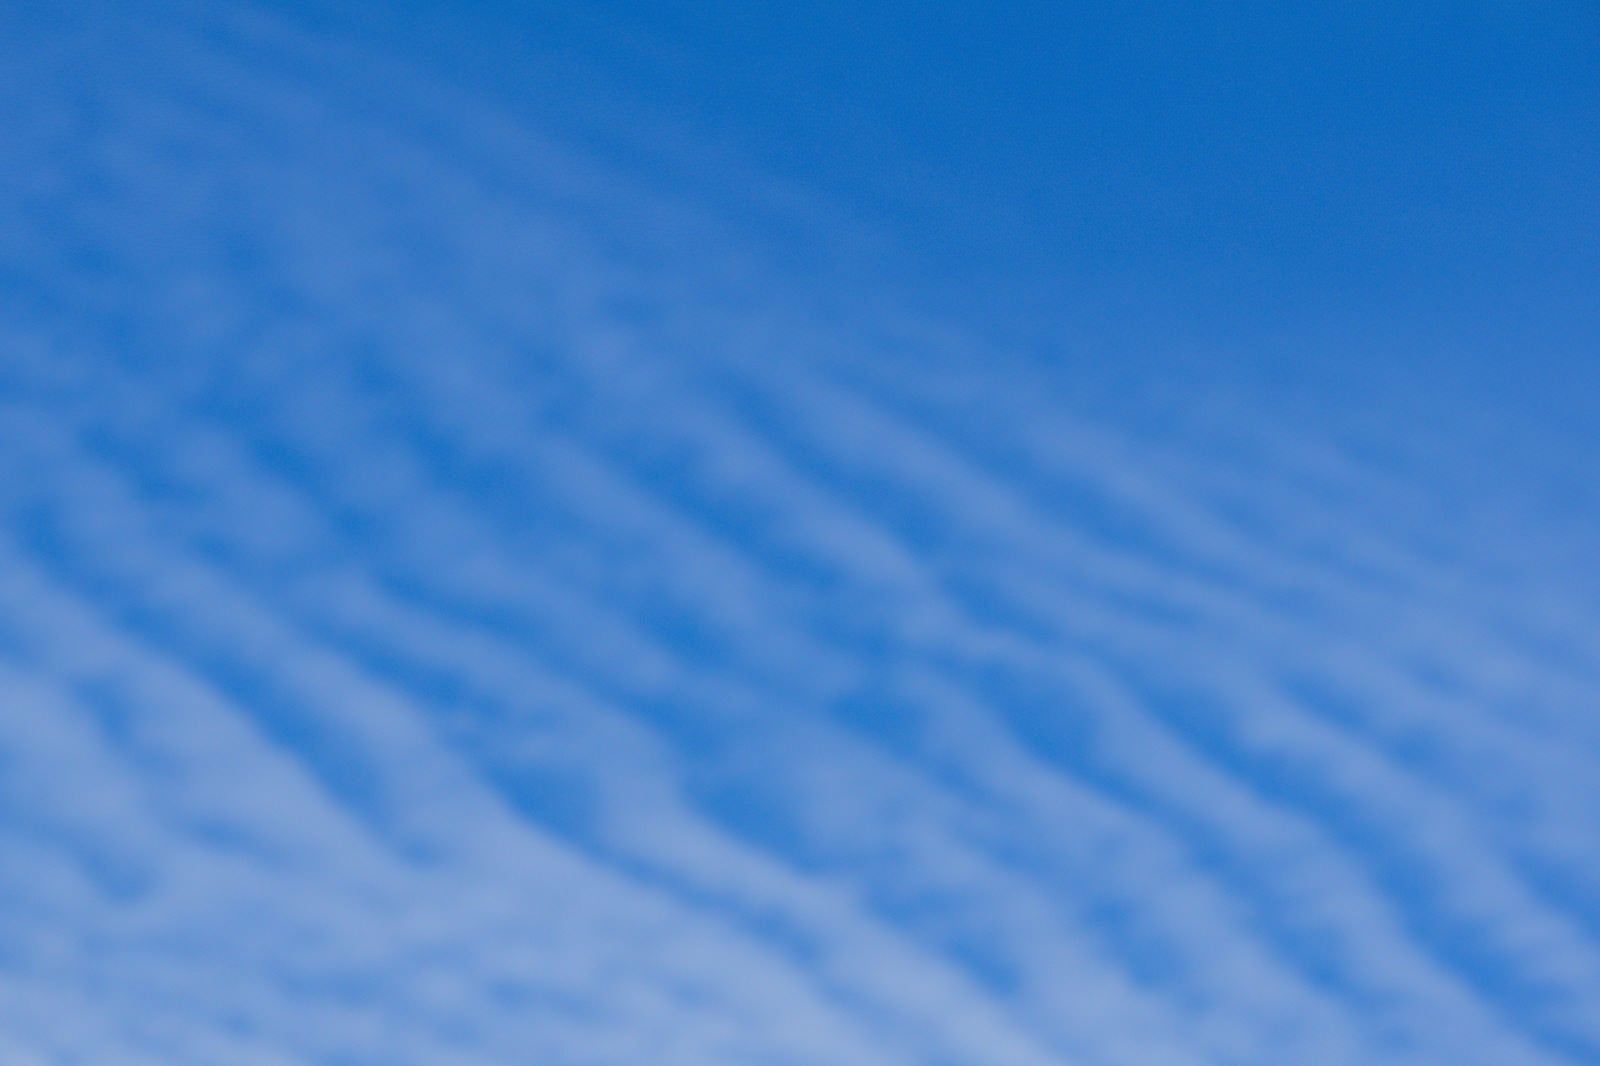 「青空に薄い波のように広がる巻積雲」の写真